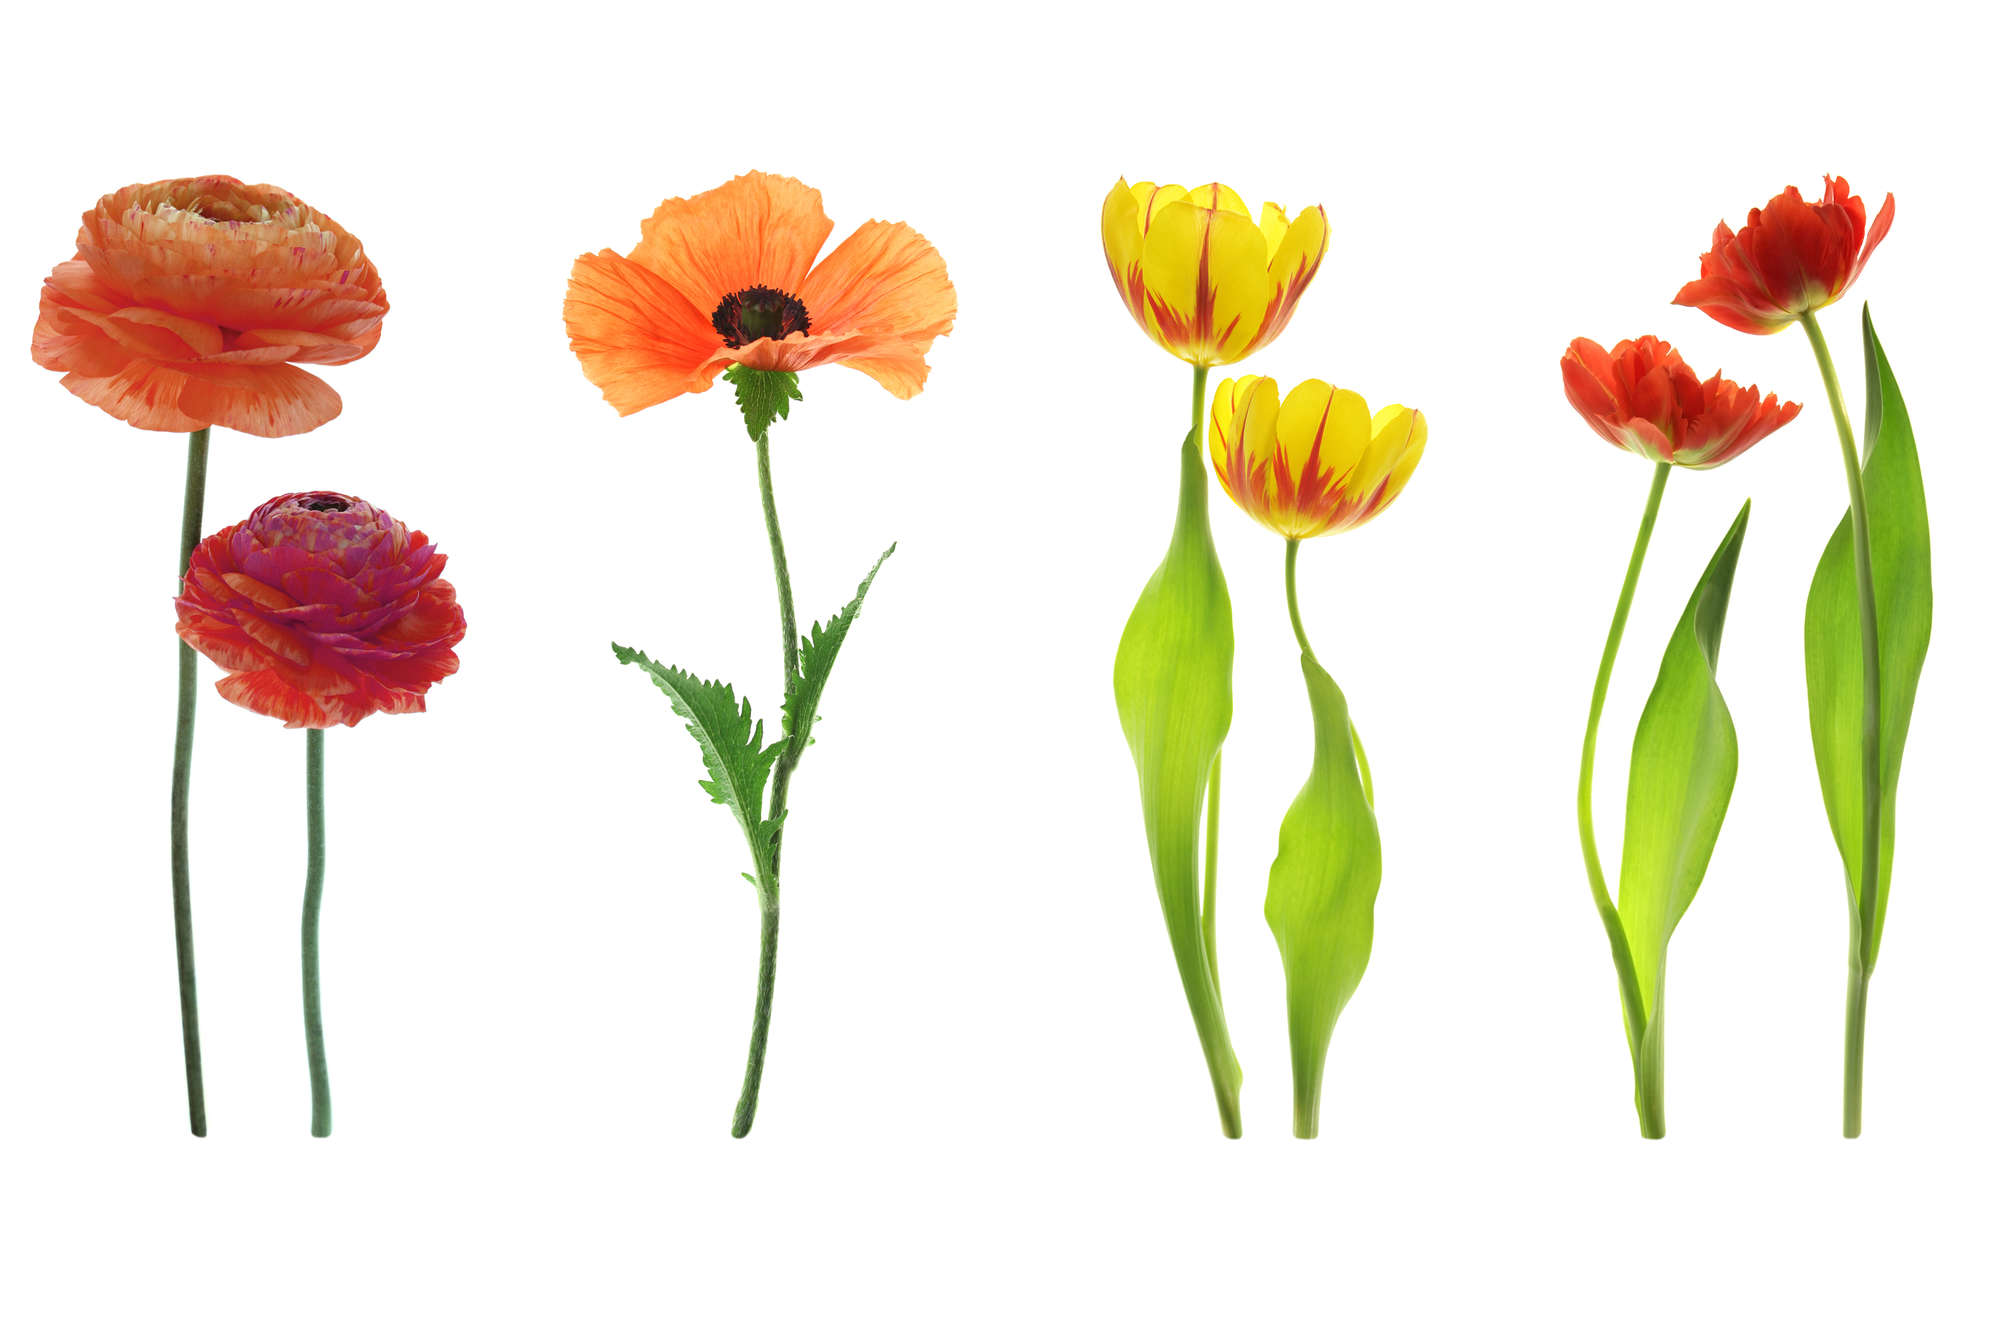             papiers peints à impression numérique variété de fleurs individuelles - nacré intissé lisse
        